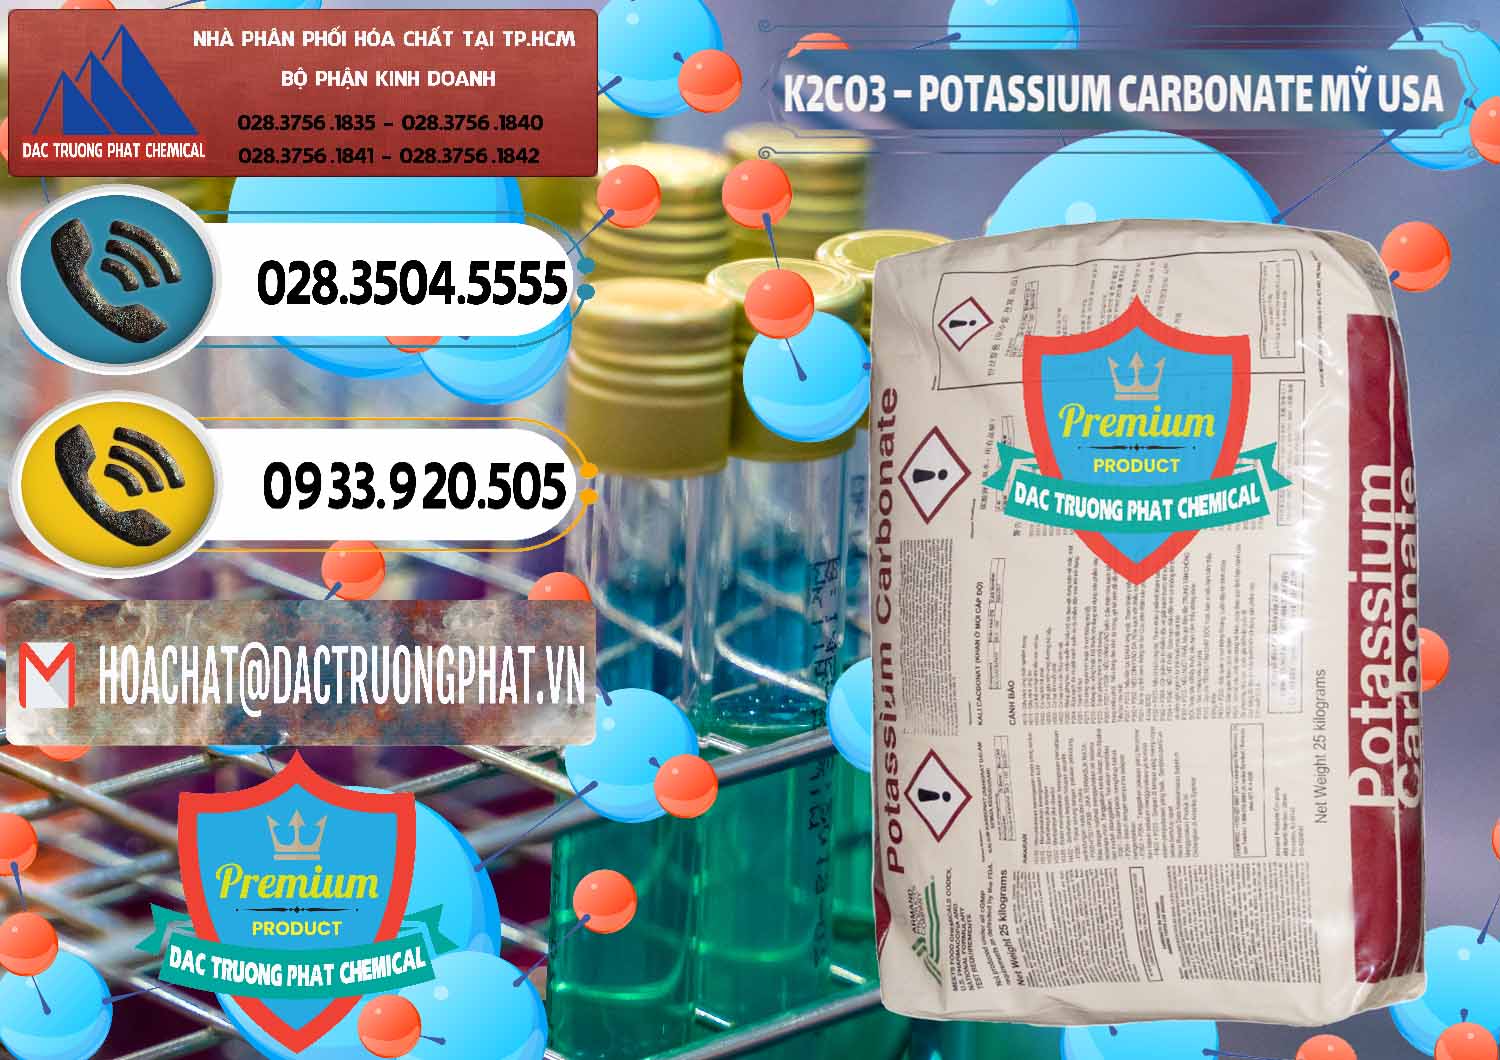 Nơi chuyên bán & phân phối K2Co3 – Potassium Carbonate Mỹ USA - 0082 - Nơi chuyên kinh doanh - cung cấp hóa chất tại TP.HCM - hoachatdetnhuom.vn